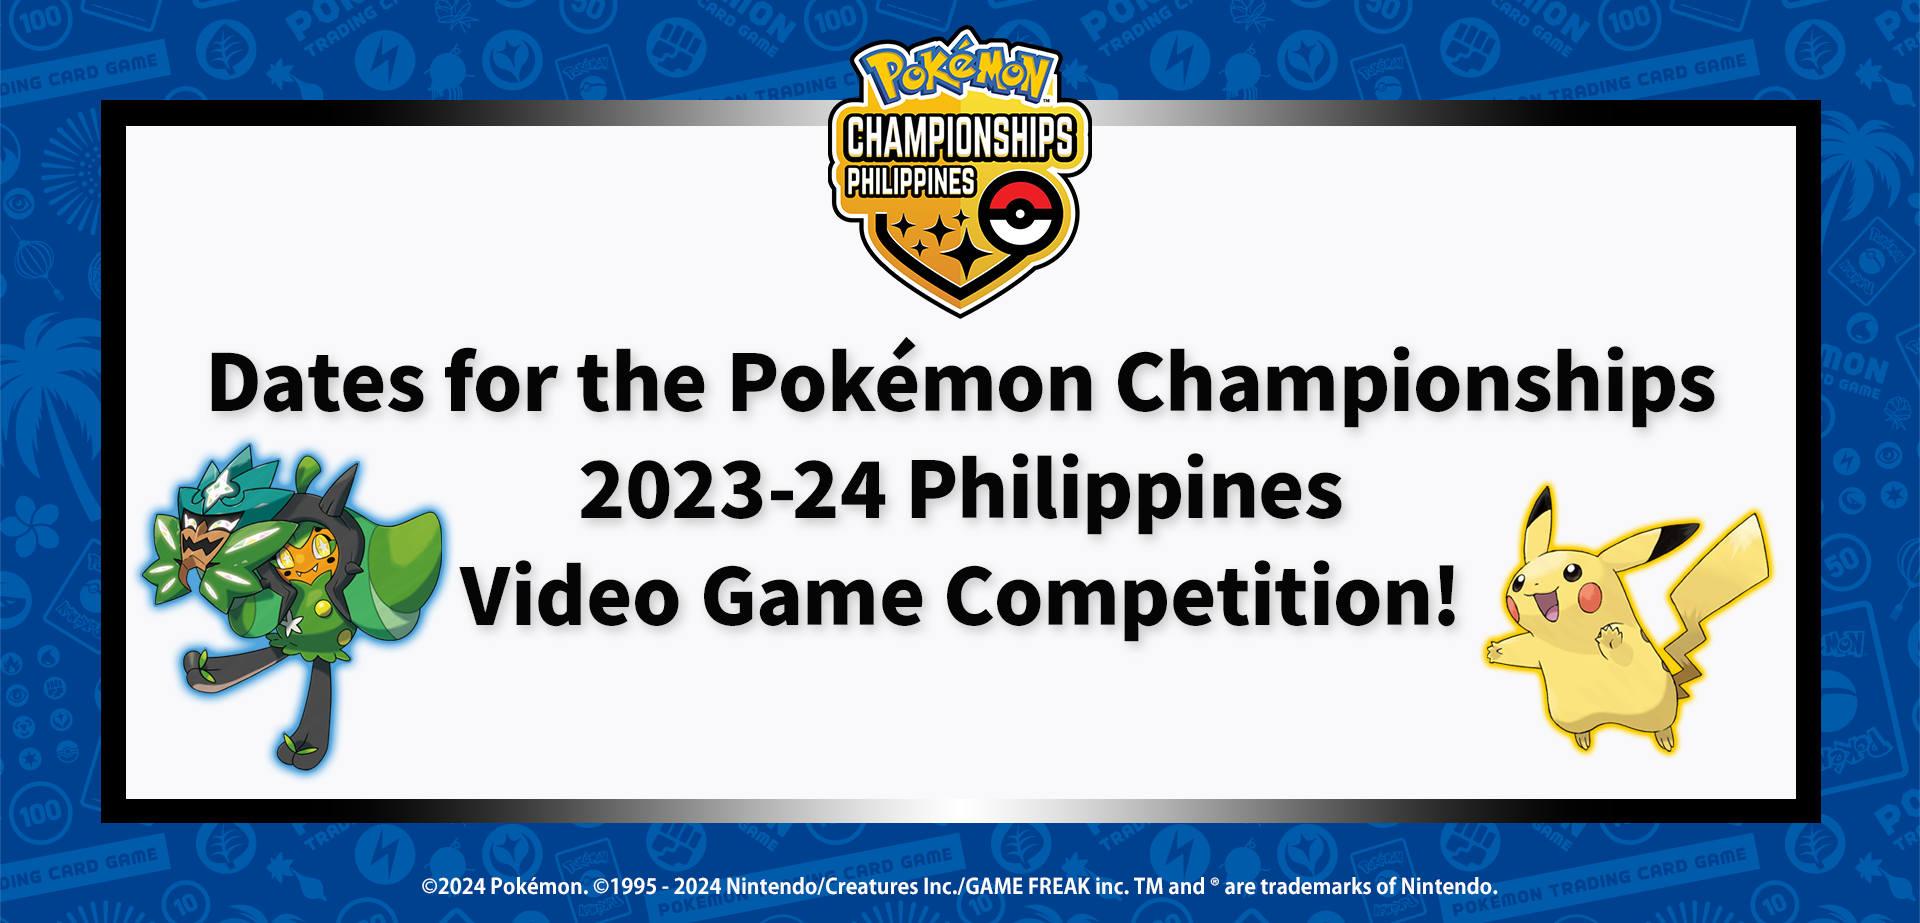 Pokemon_2023-24ChampionsShipVG_PH_info_0321